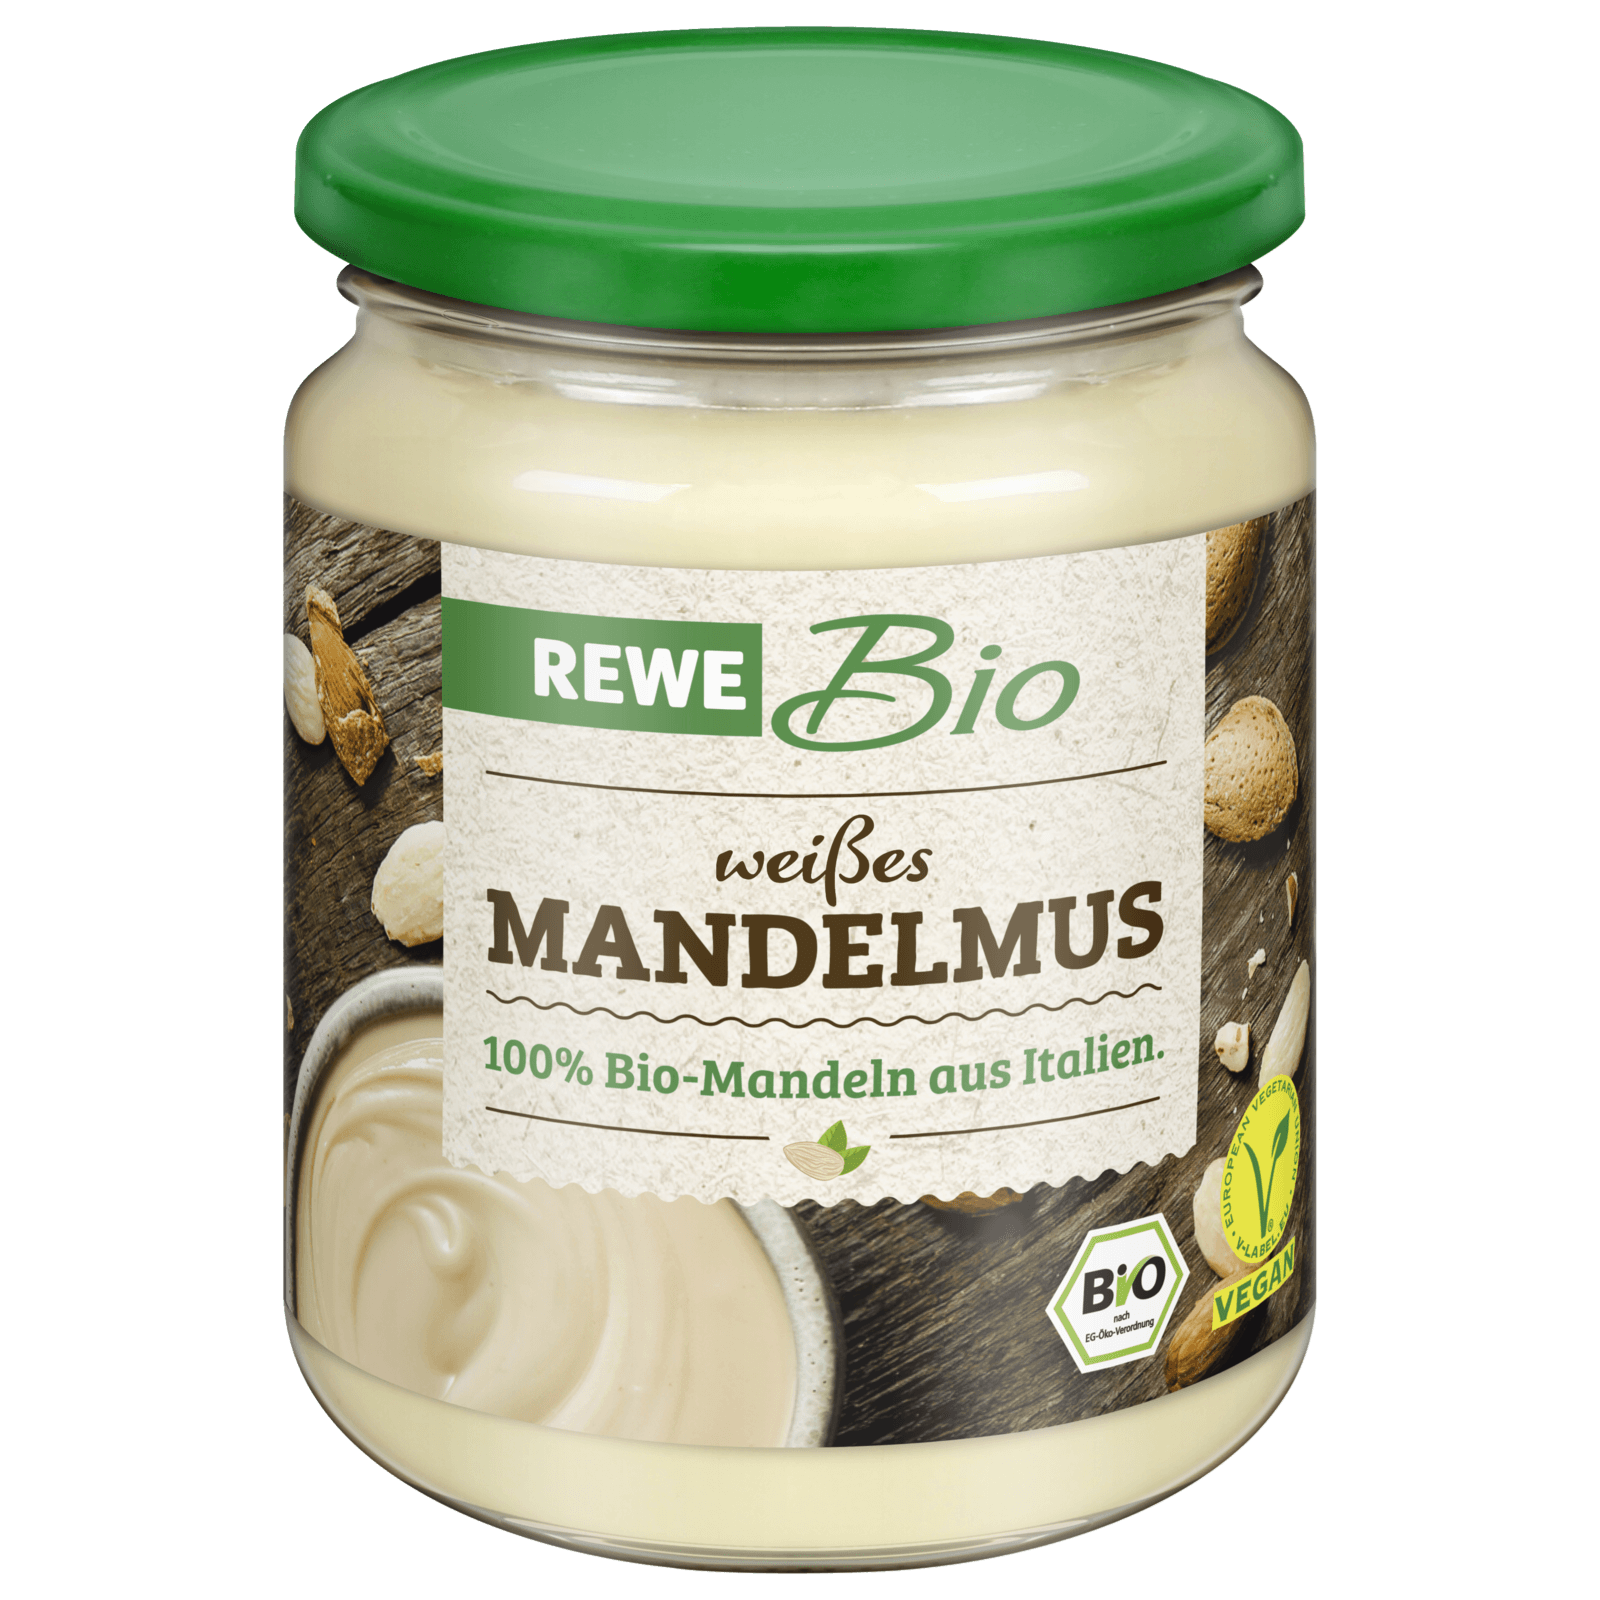 REWE Bio Mandelmus weiß 250g